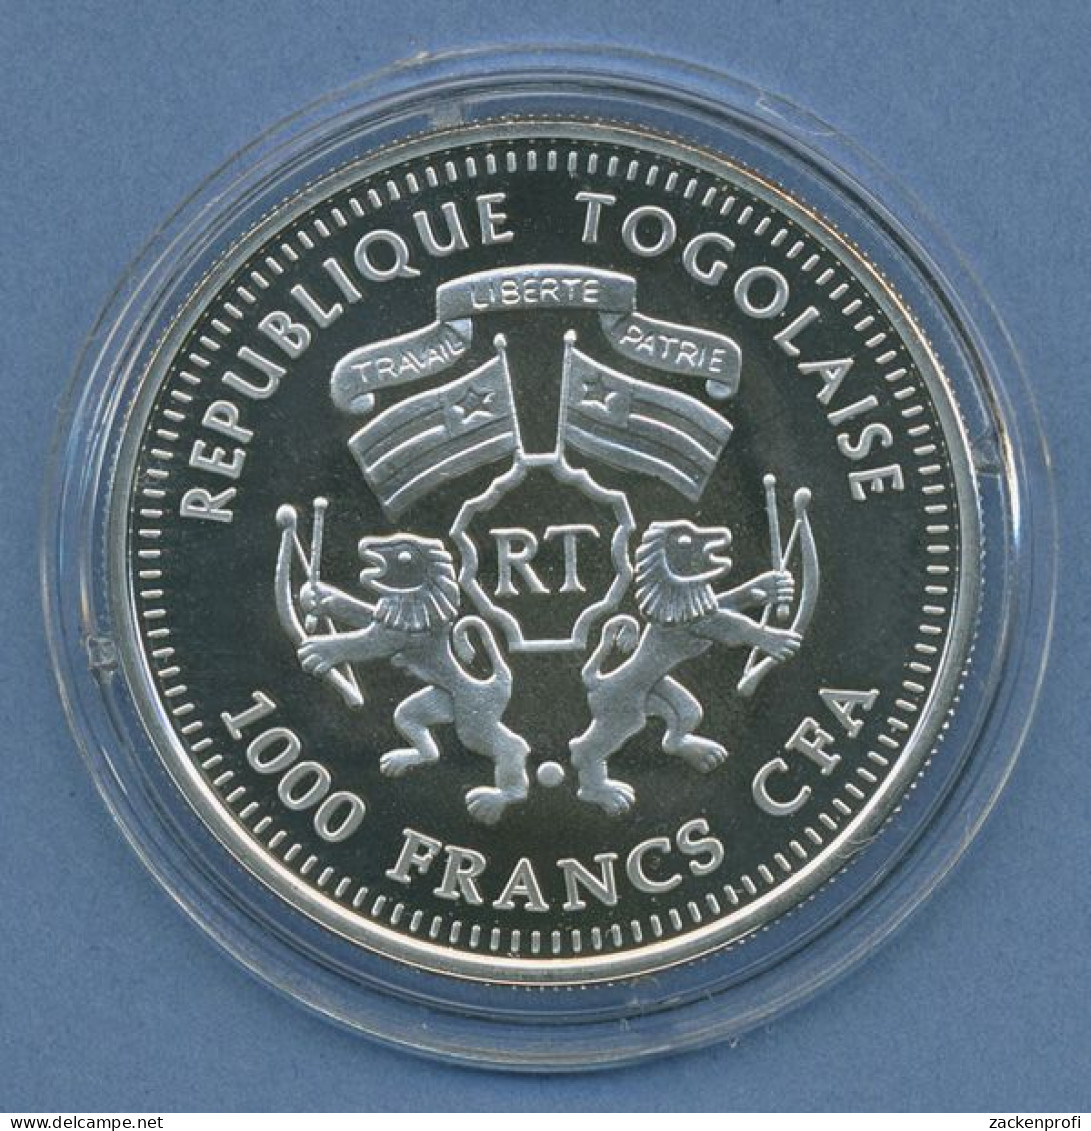 Togo 1000 Francs 2011 Segelschiff Prince Royal, Silber, PP In Kapsel (m4760) - Togo